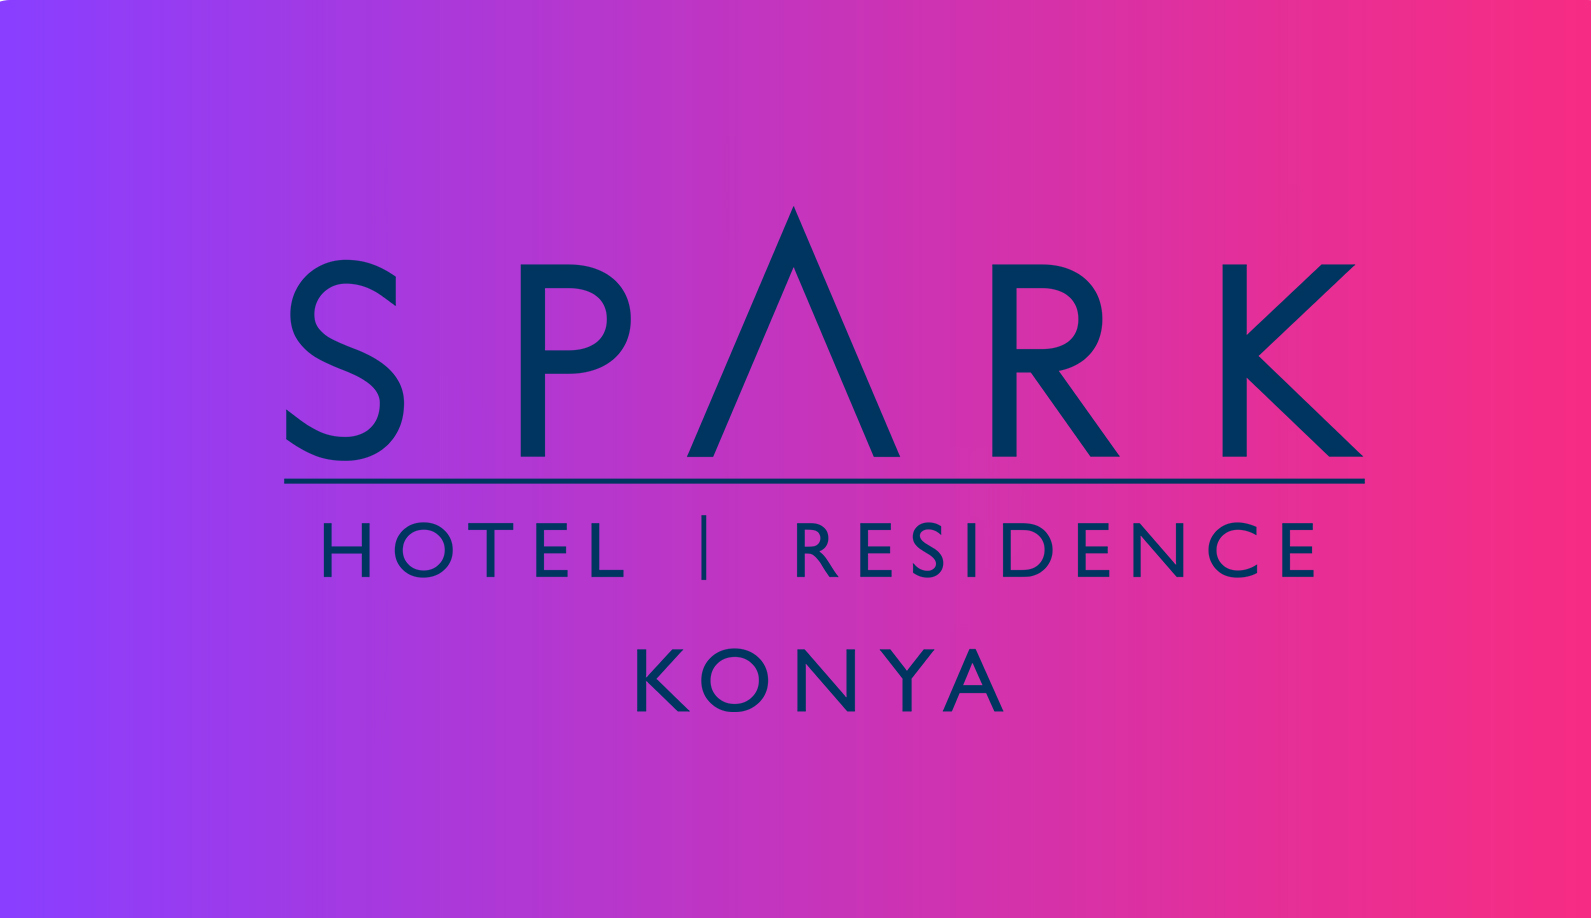 Spark Hotel  Residence